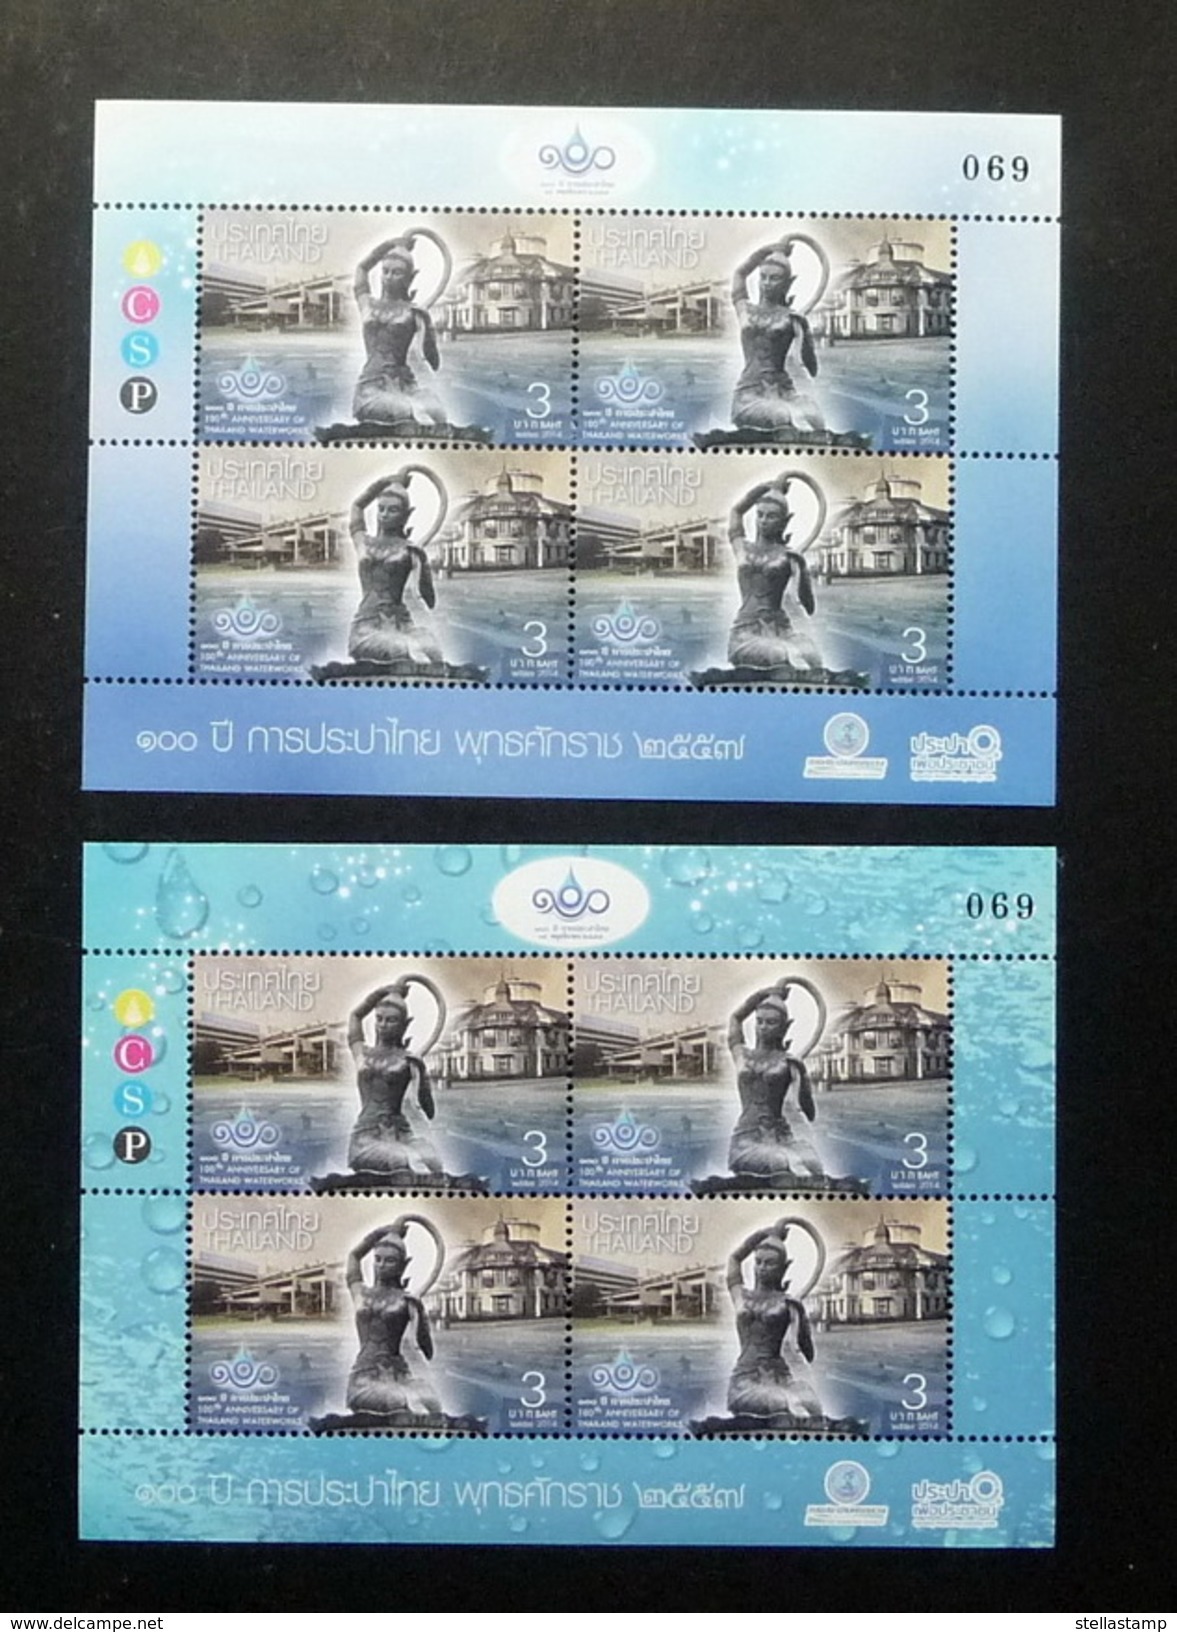 Thailand Stamp 2014 100th Anniversary Of Thai Waterworks - Miniature BLK4 (2) Match# - Thailand